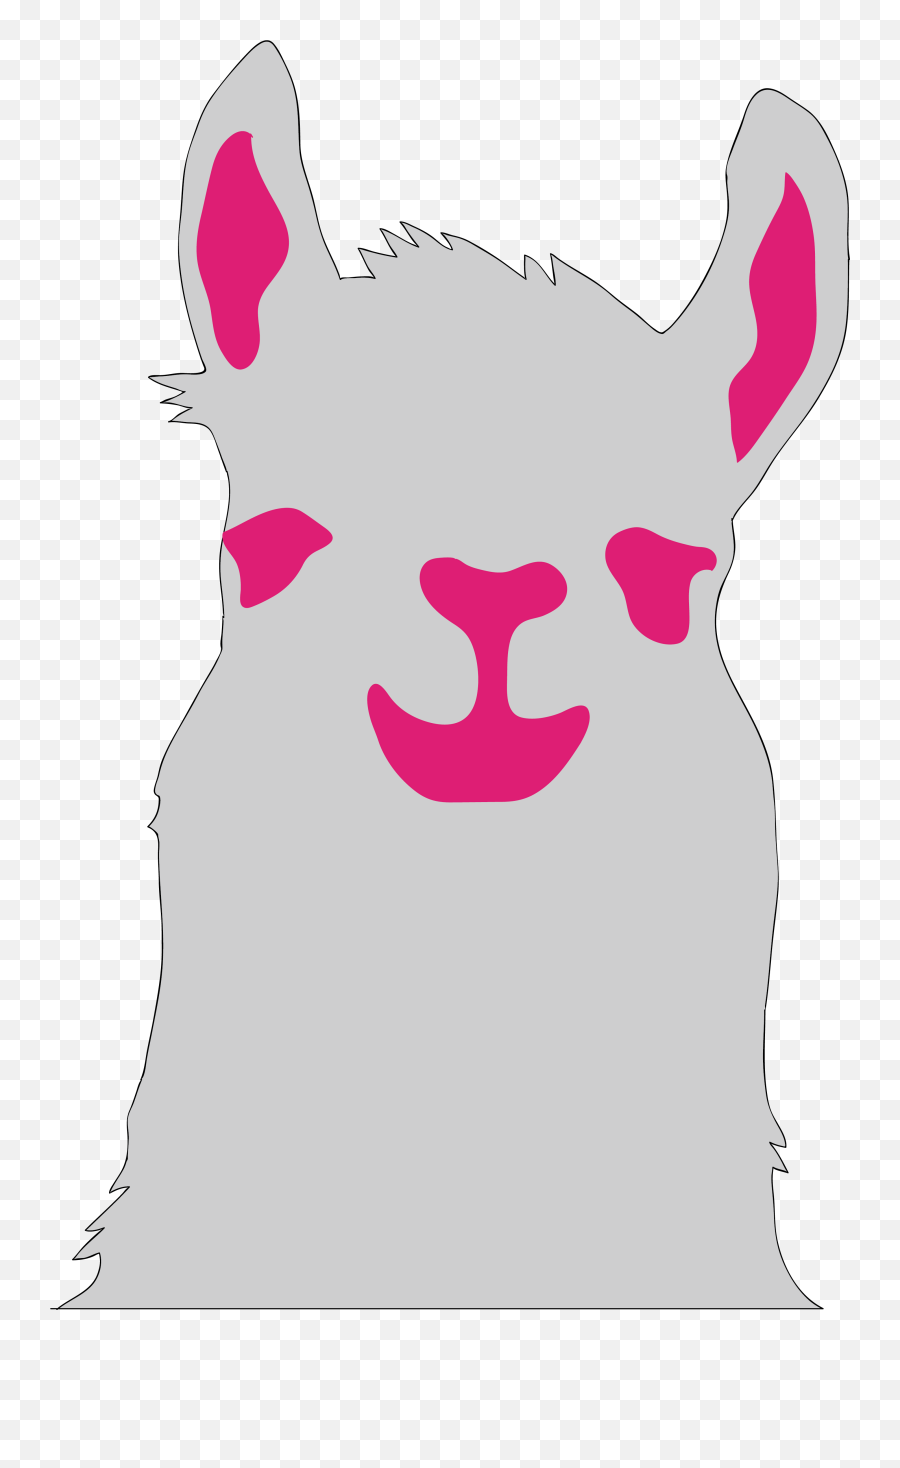 Image Result For Llama Emojis - Llama Illustration Png,Llama Emoji